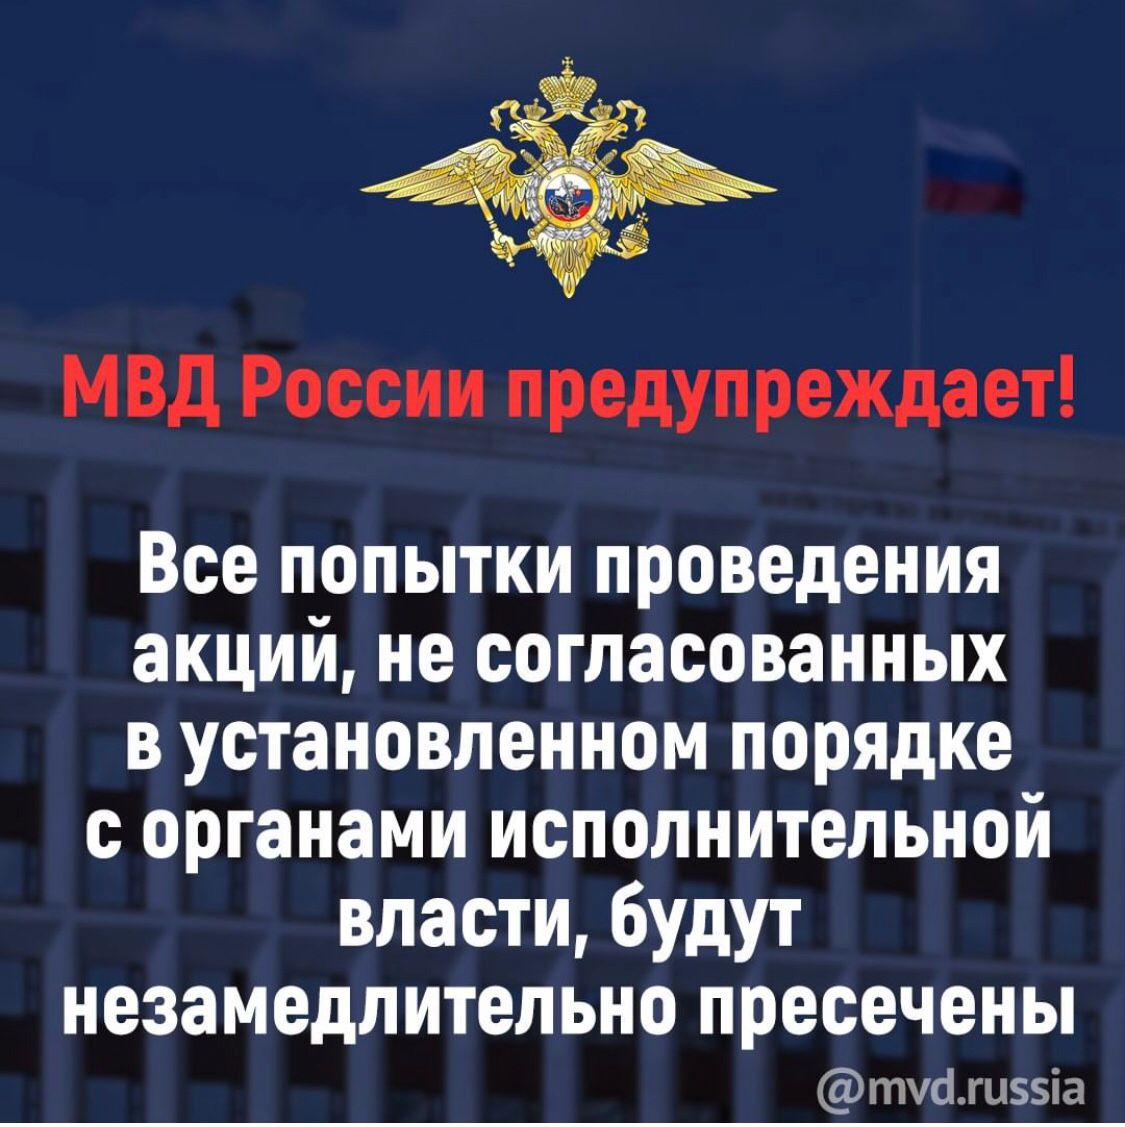 МВД России предупреждает, что все попытки проведения акций